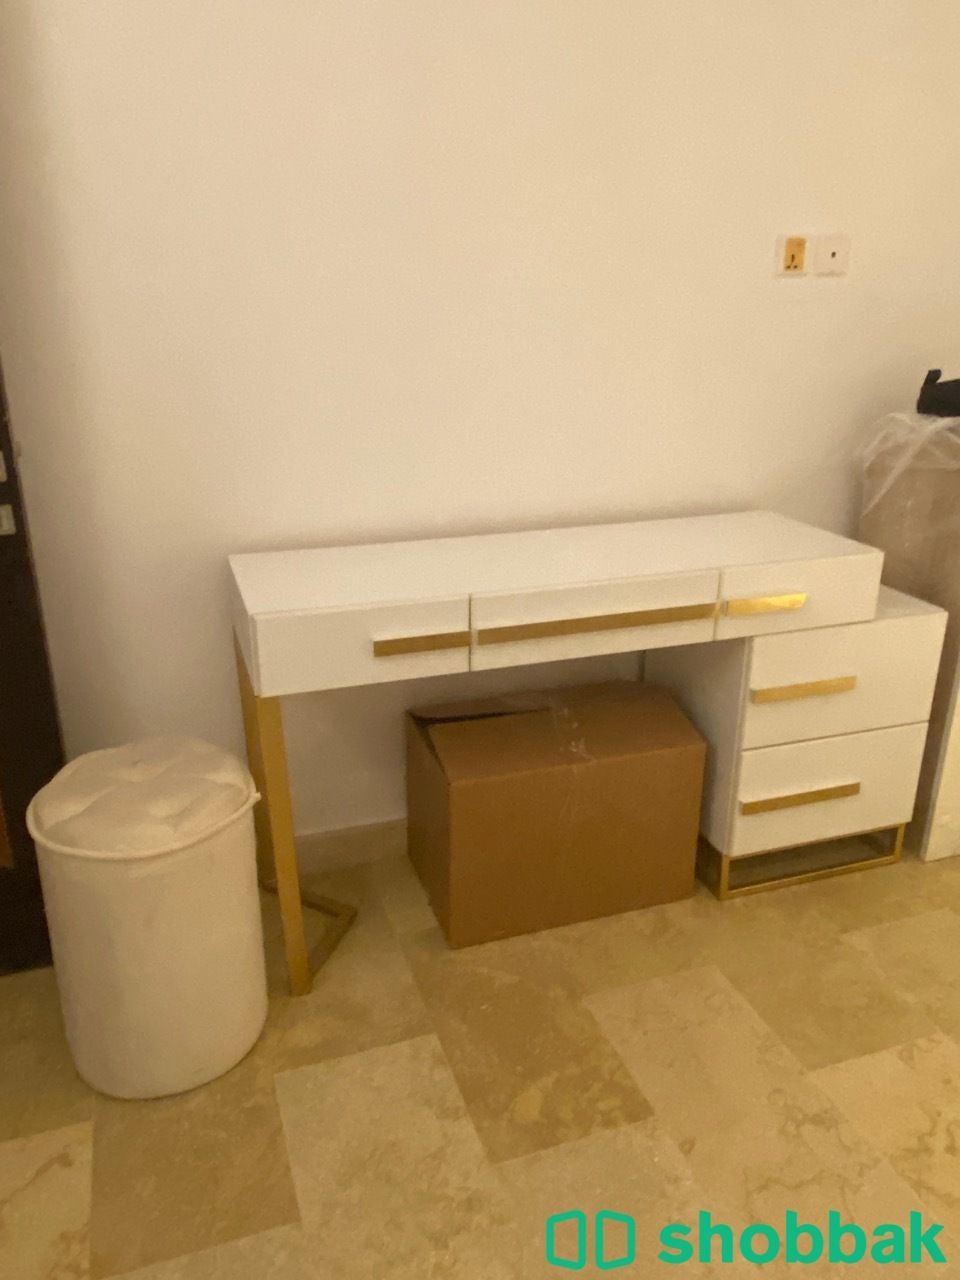 غرفة نوم مفصلة كاملة للبيع Shobbak Saudi Arabia